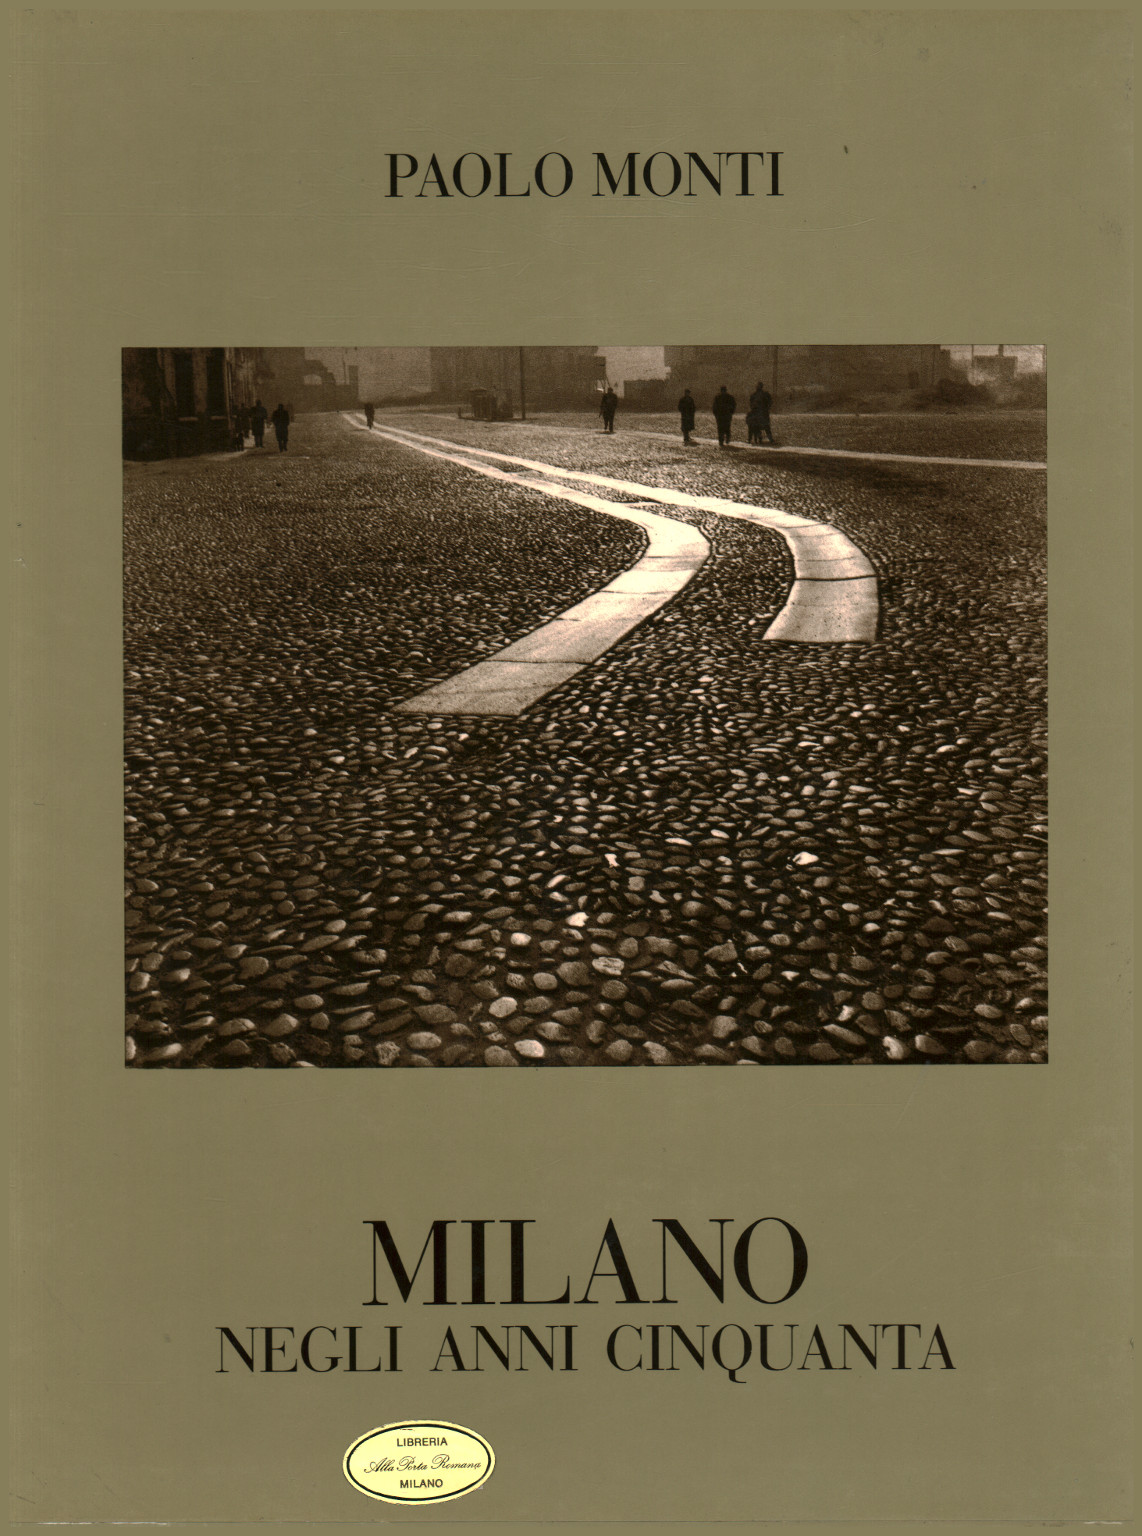 Milan dans les années 50